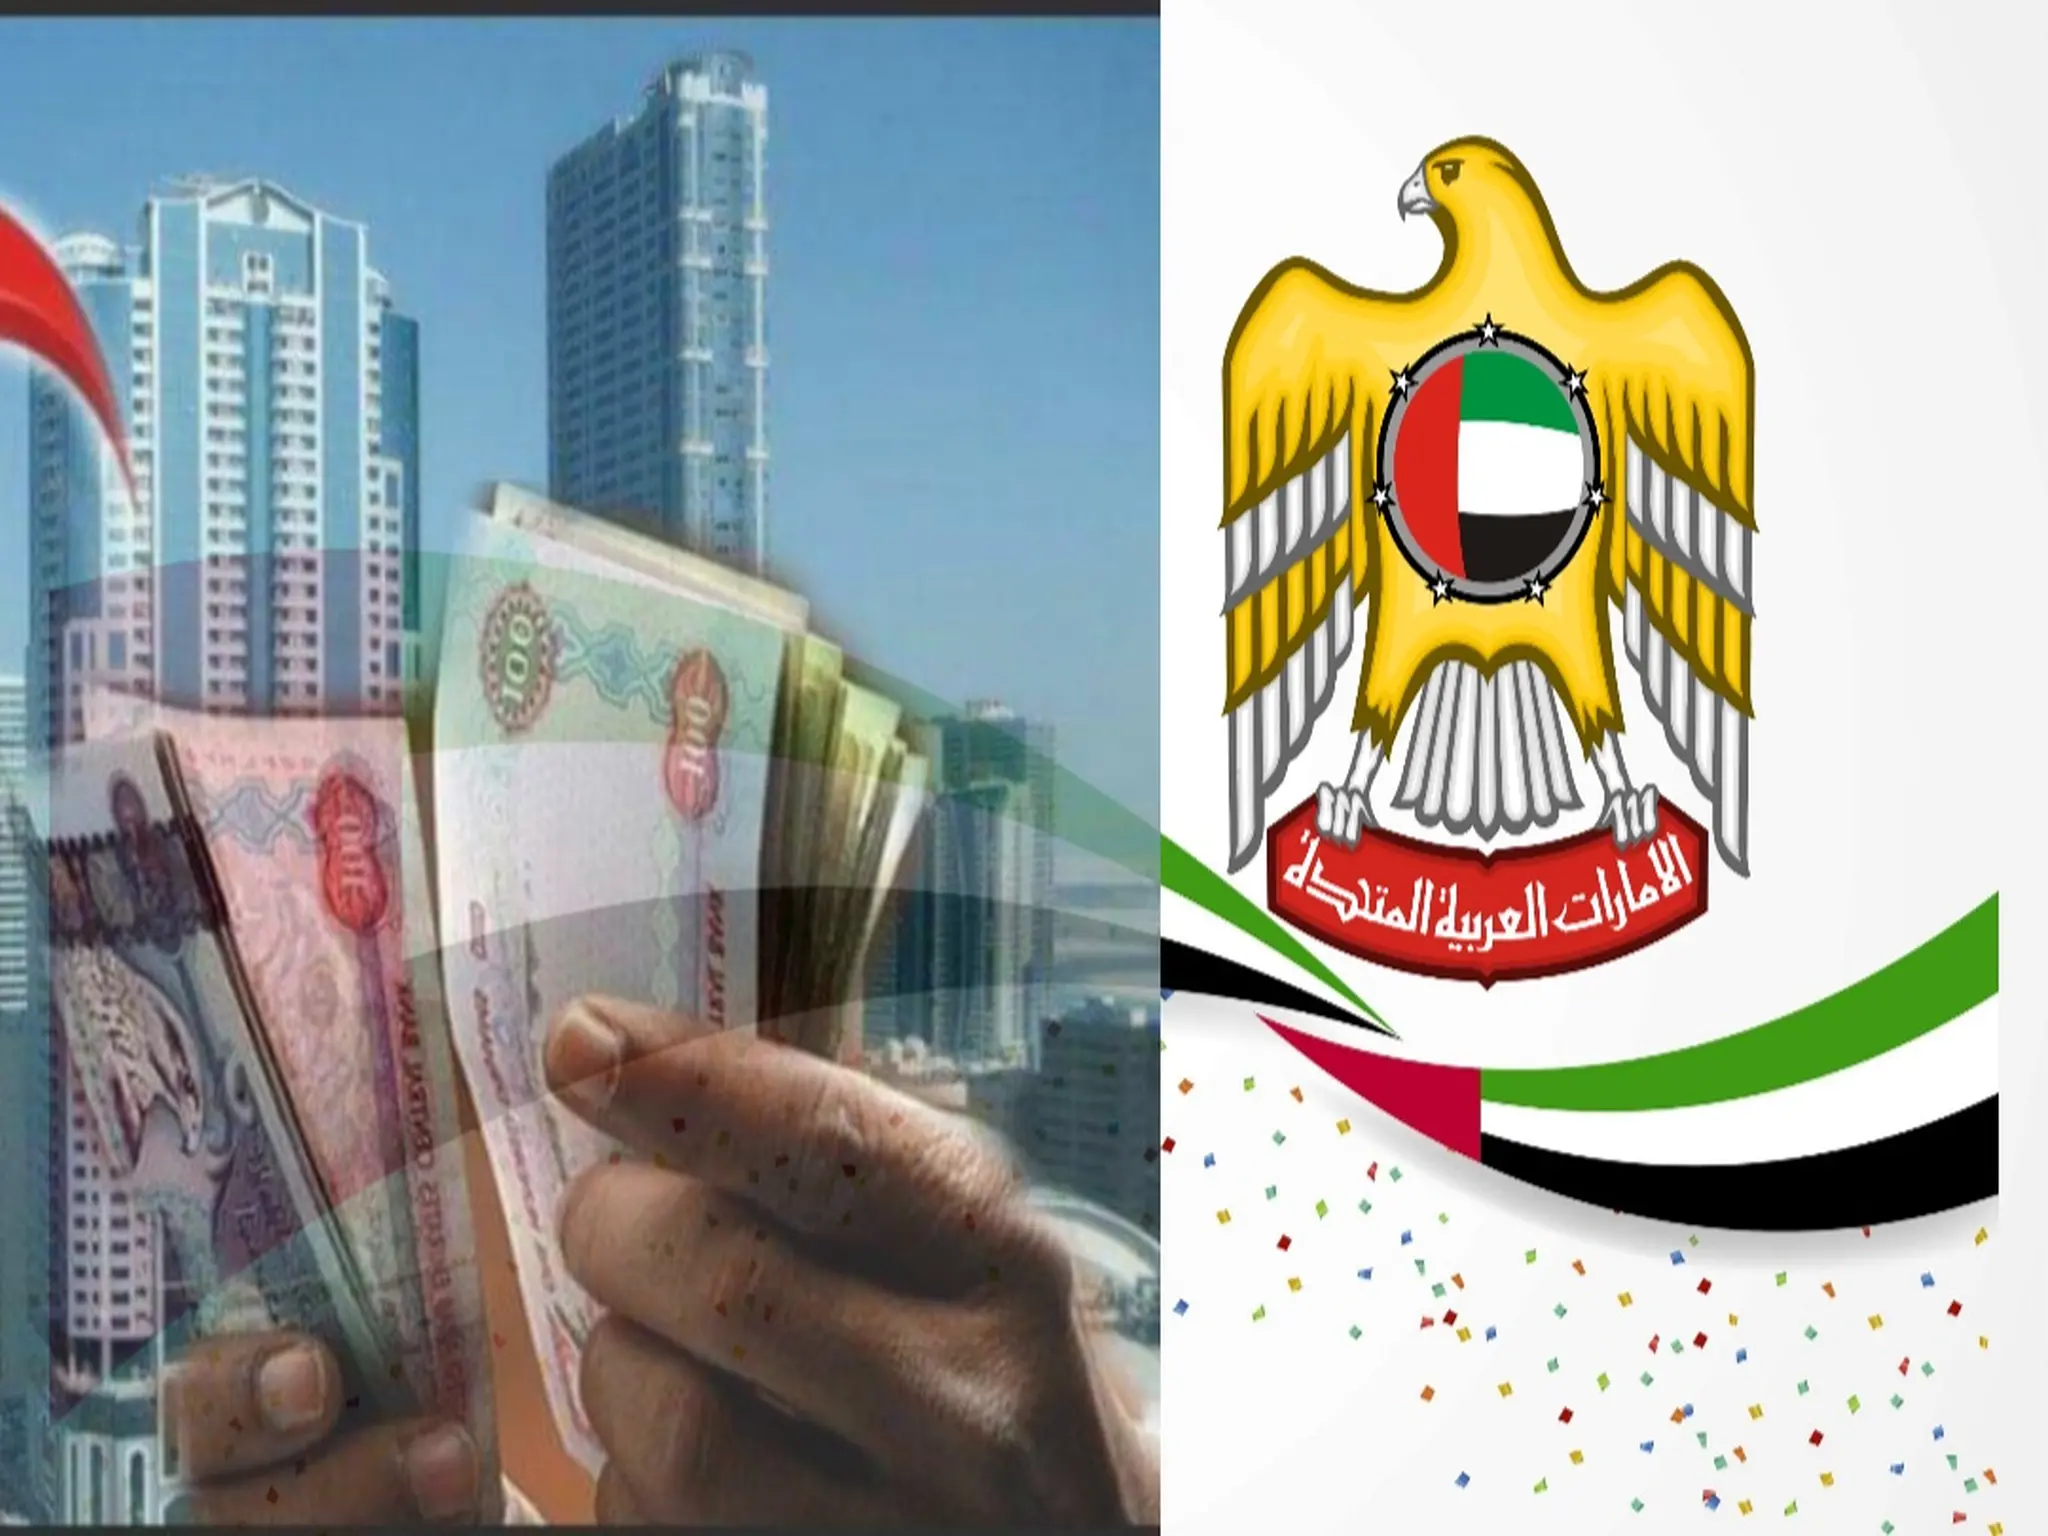 حلول المقيمين لتوفير الأموال بعد ارتفاع أسعار الإيجارات في الإمارات